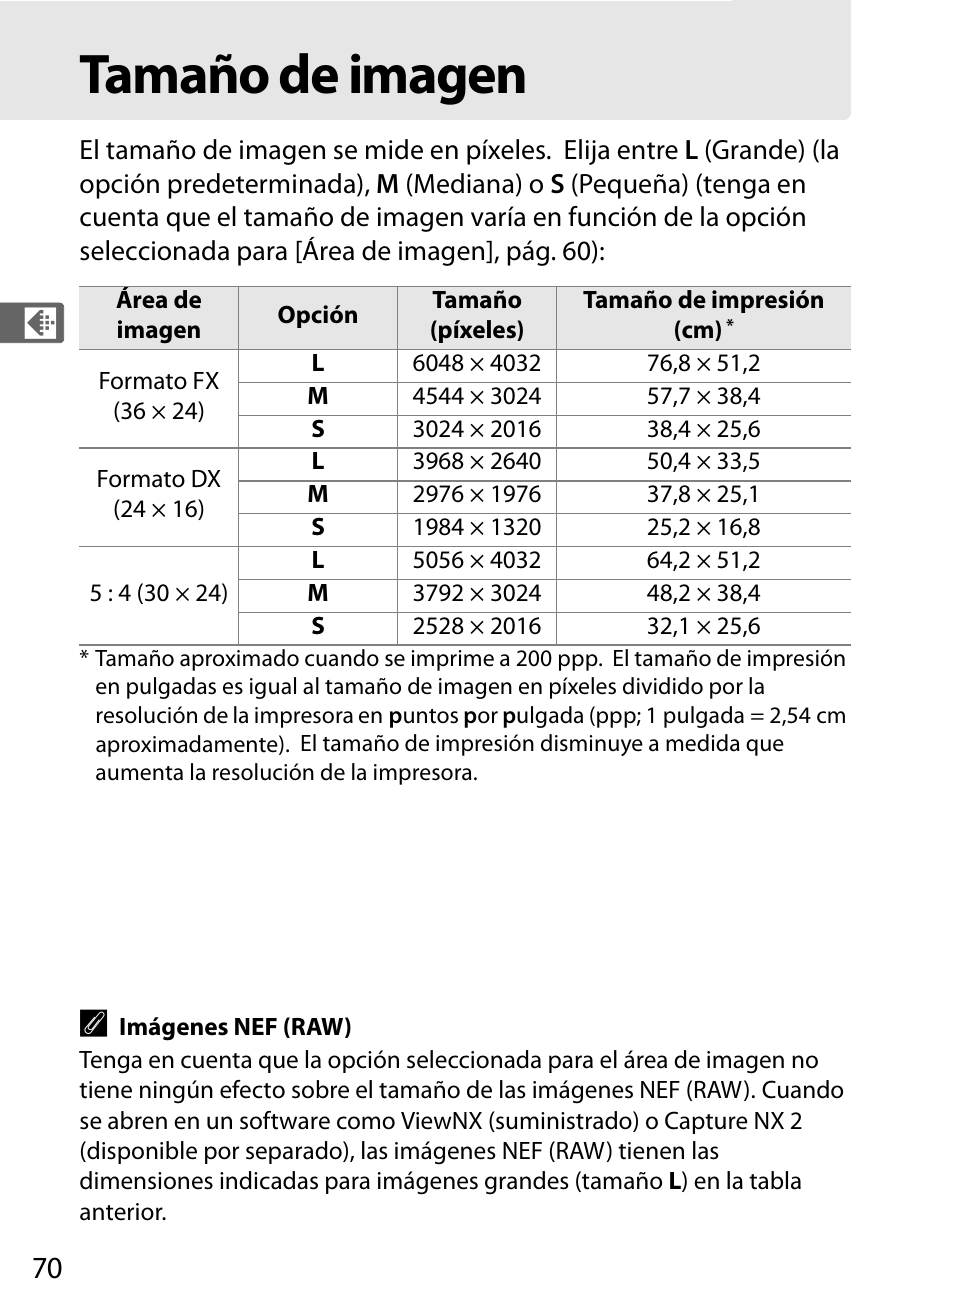 Tamaño de imagen | Nikon D3X Manual del usuario | Página 96 / 476